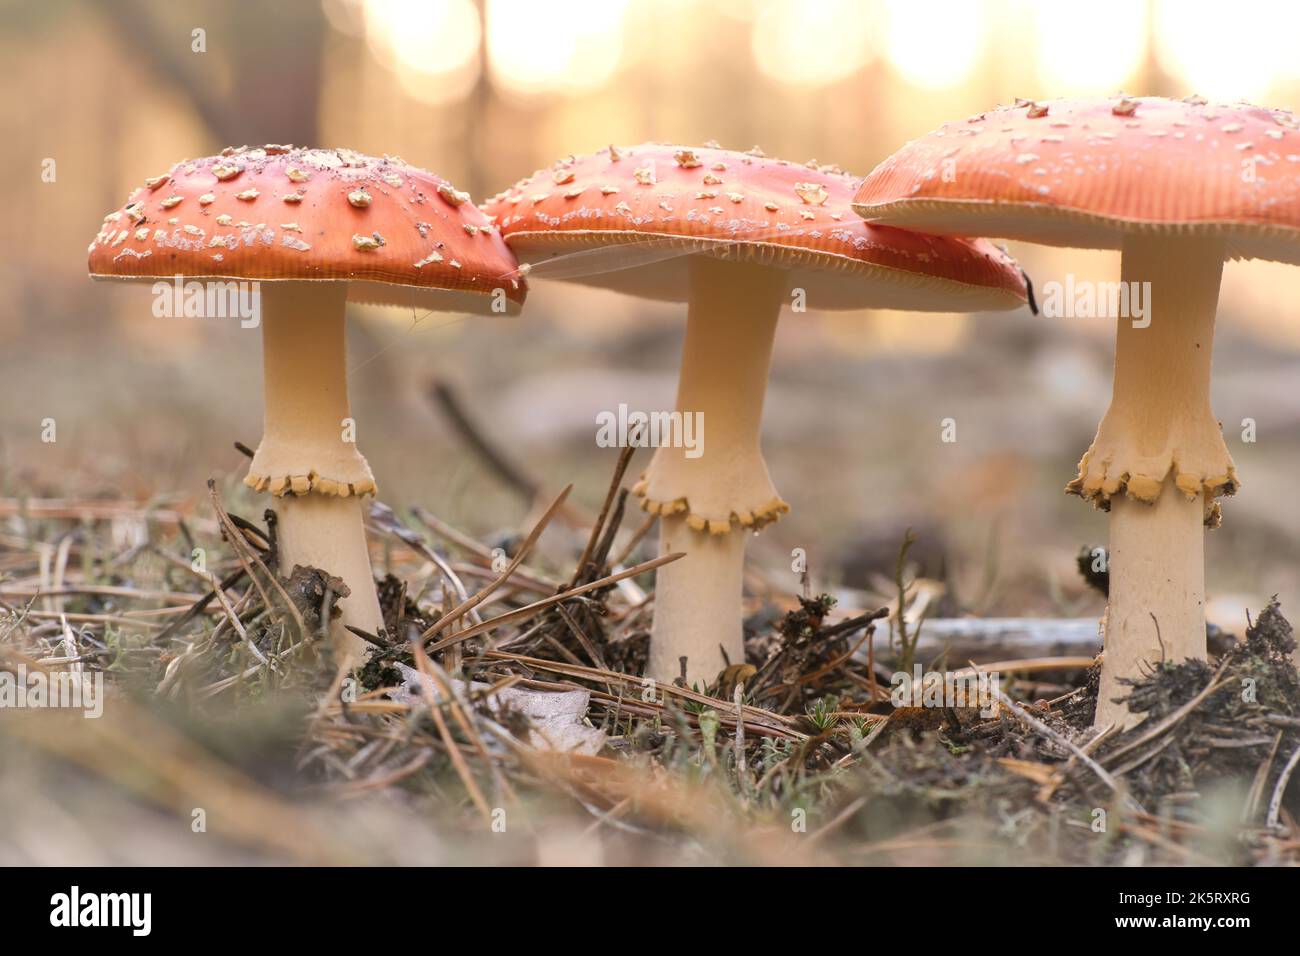 Kröten am Boden eines Nadelwaldes im Wald. Giftiger Pilz. Rote Mütze mit weißen Flecken. Nahaufnahme der Natur im Wald Stockfoto